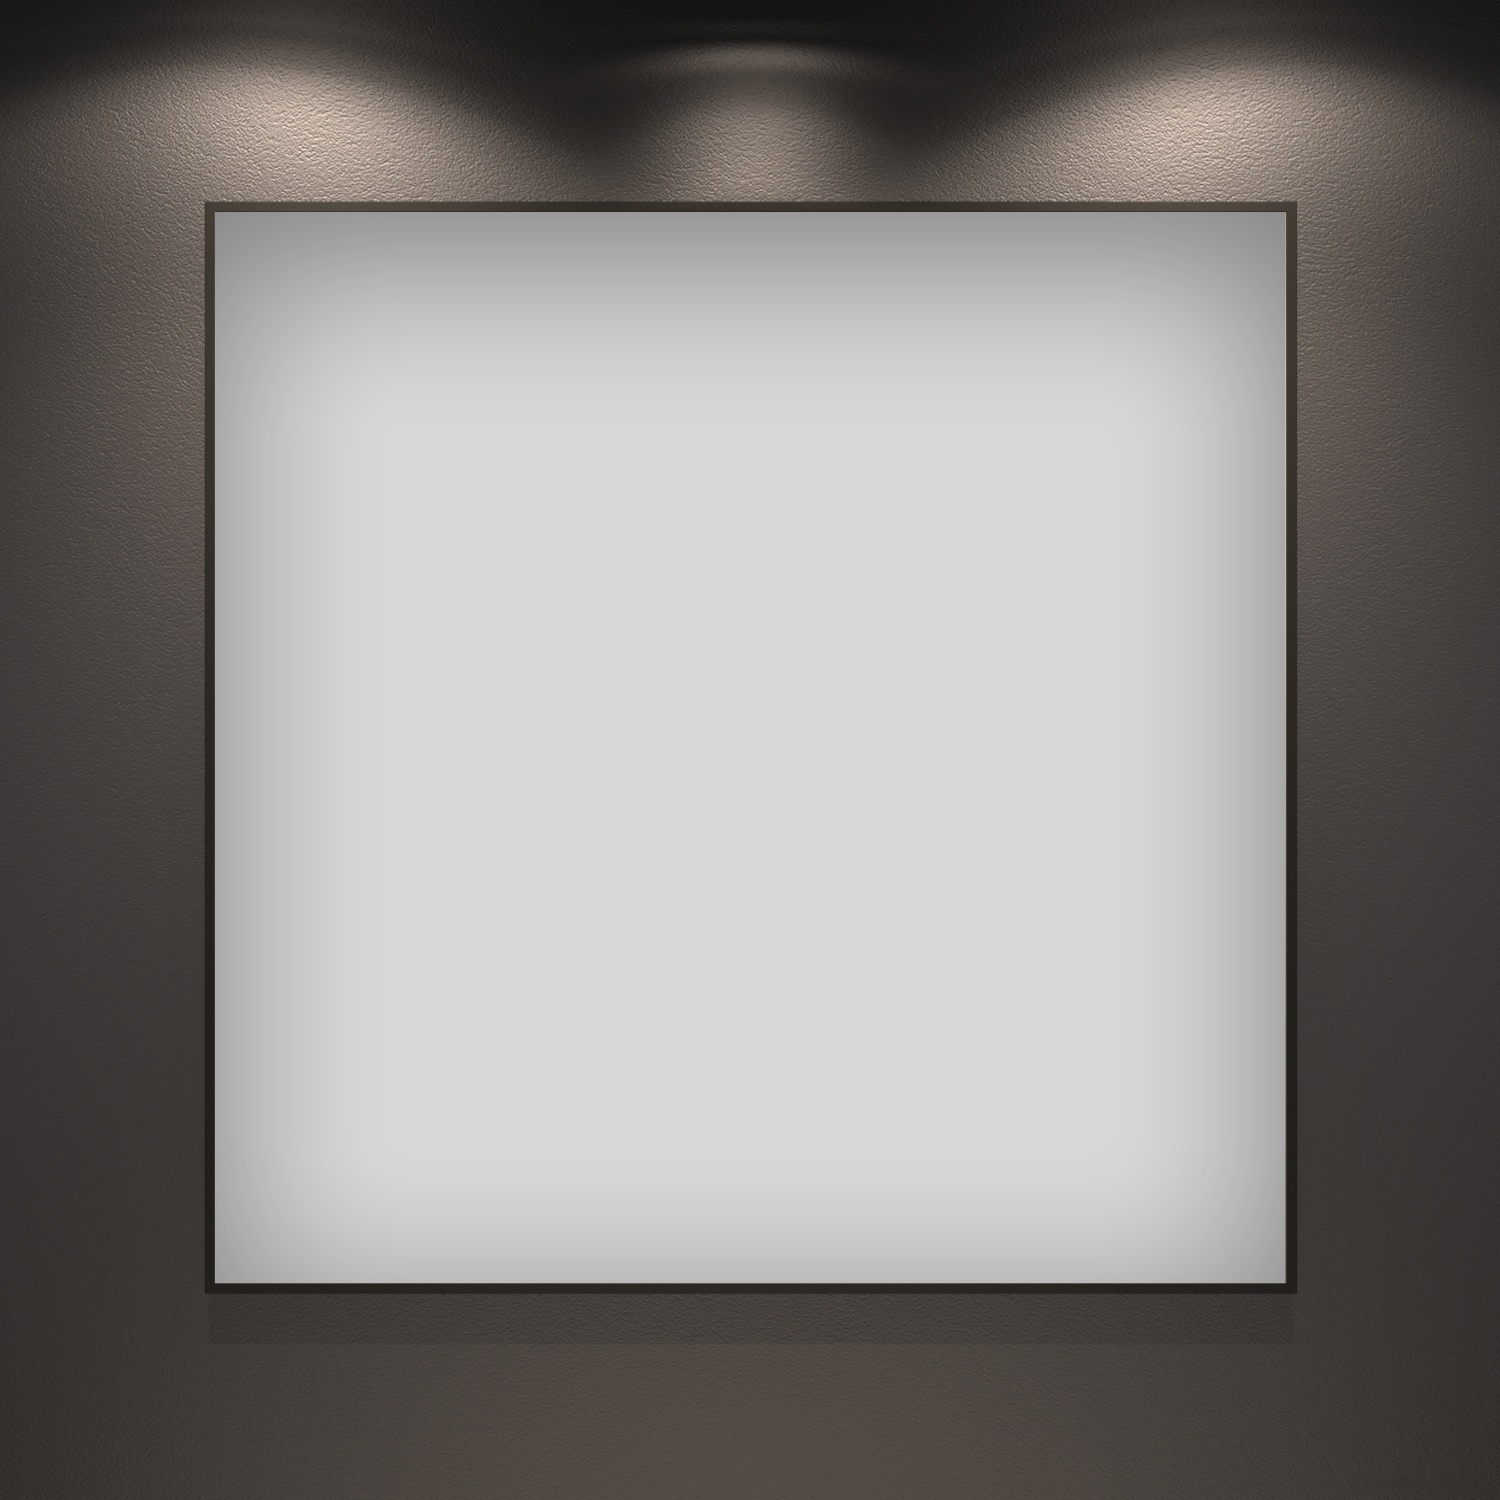 зеркало wellsee зеркало 7 rays' spectrum 172200280, 50 х 50 см